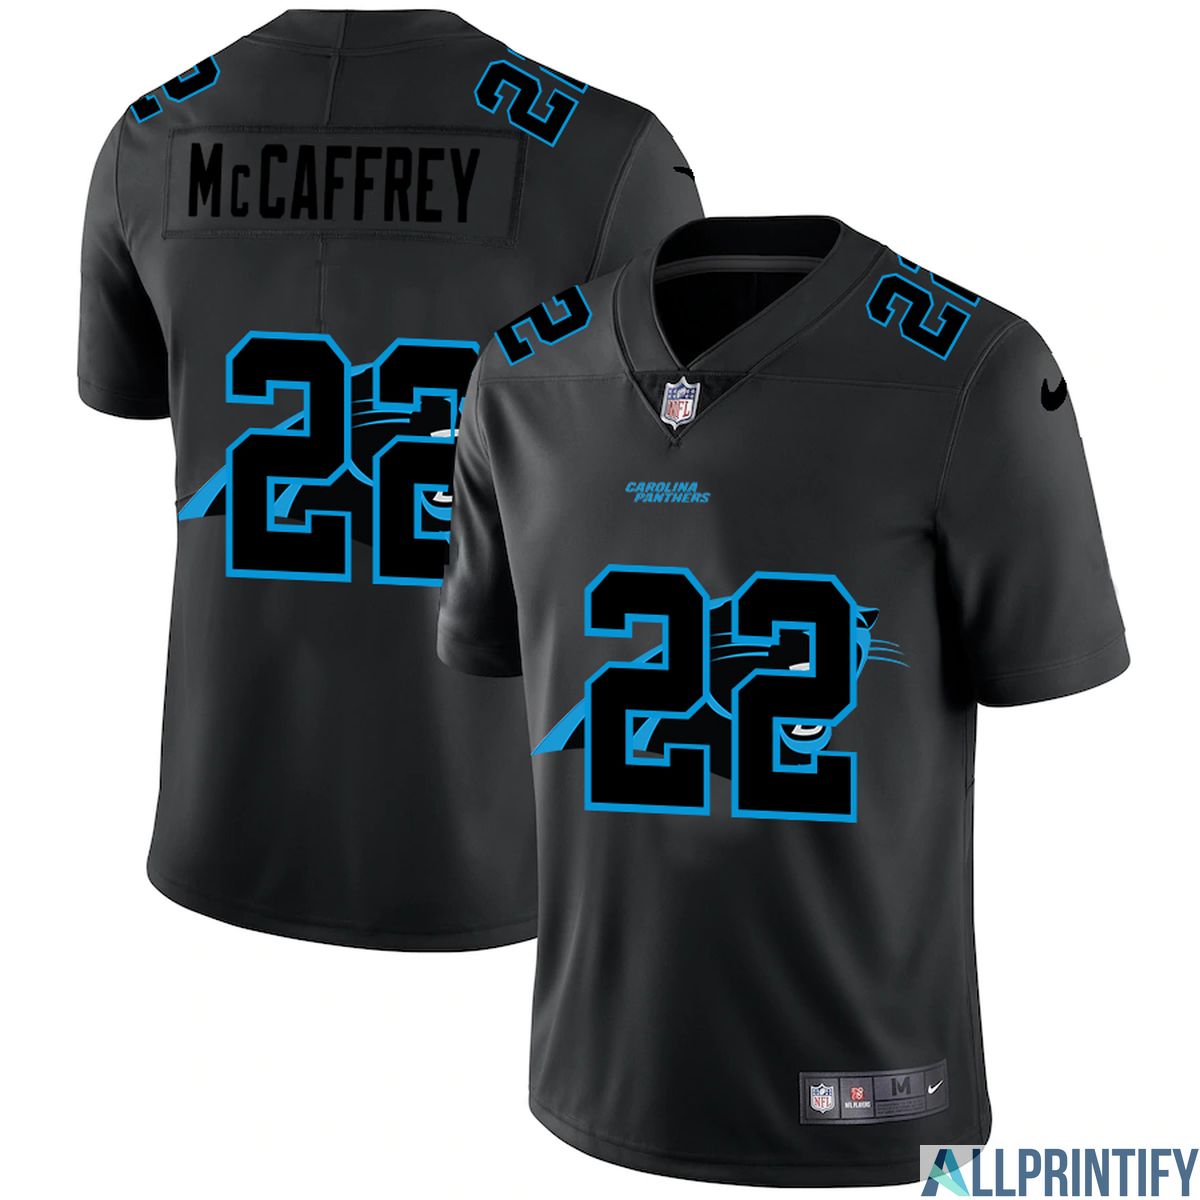 Christian Mccaffrey Carolina Panthers 22 Limited Player Jersey Limited Player Jersey